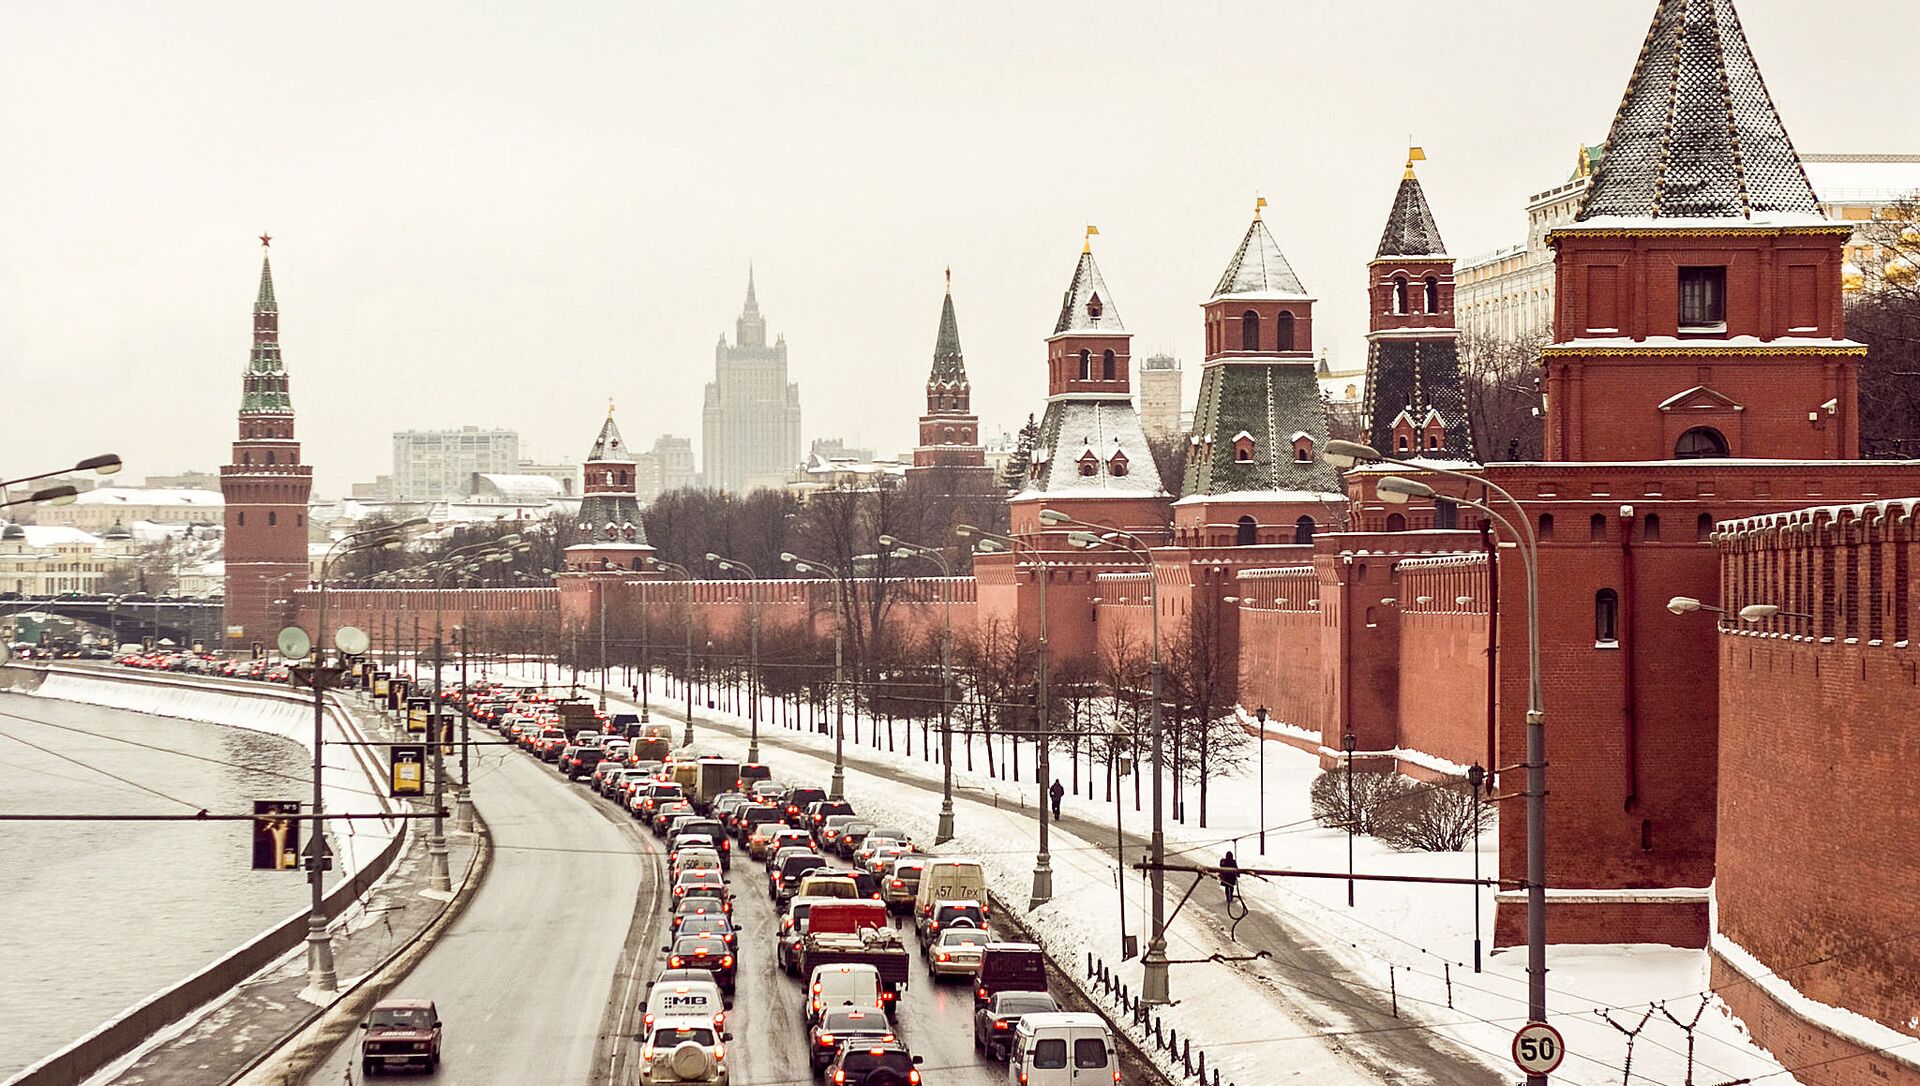 Вид на Кремлевскую набережную с Большого Москворецкого моста - Sputnik Lietuva, 1920, 01.02.2021